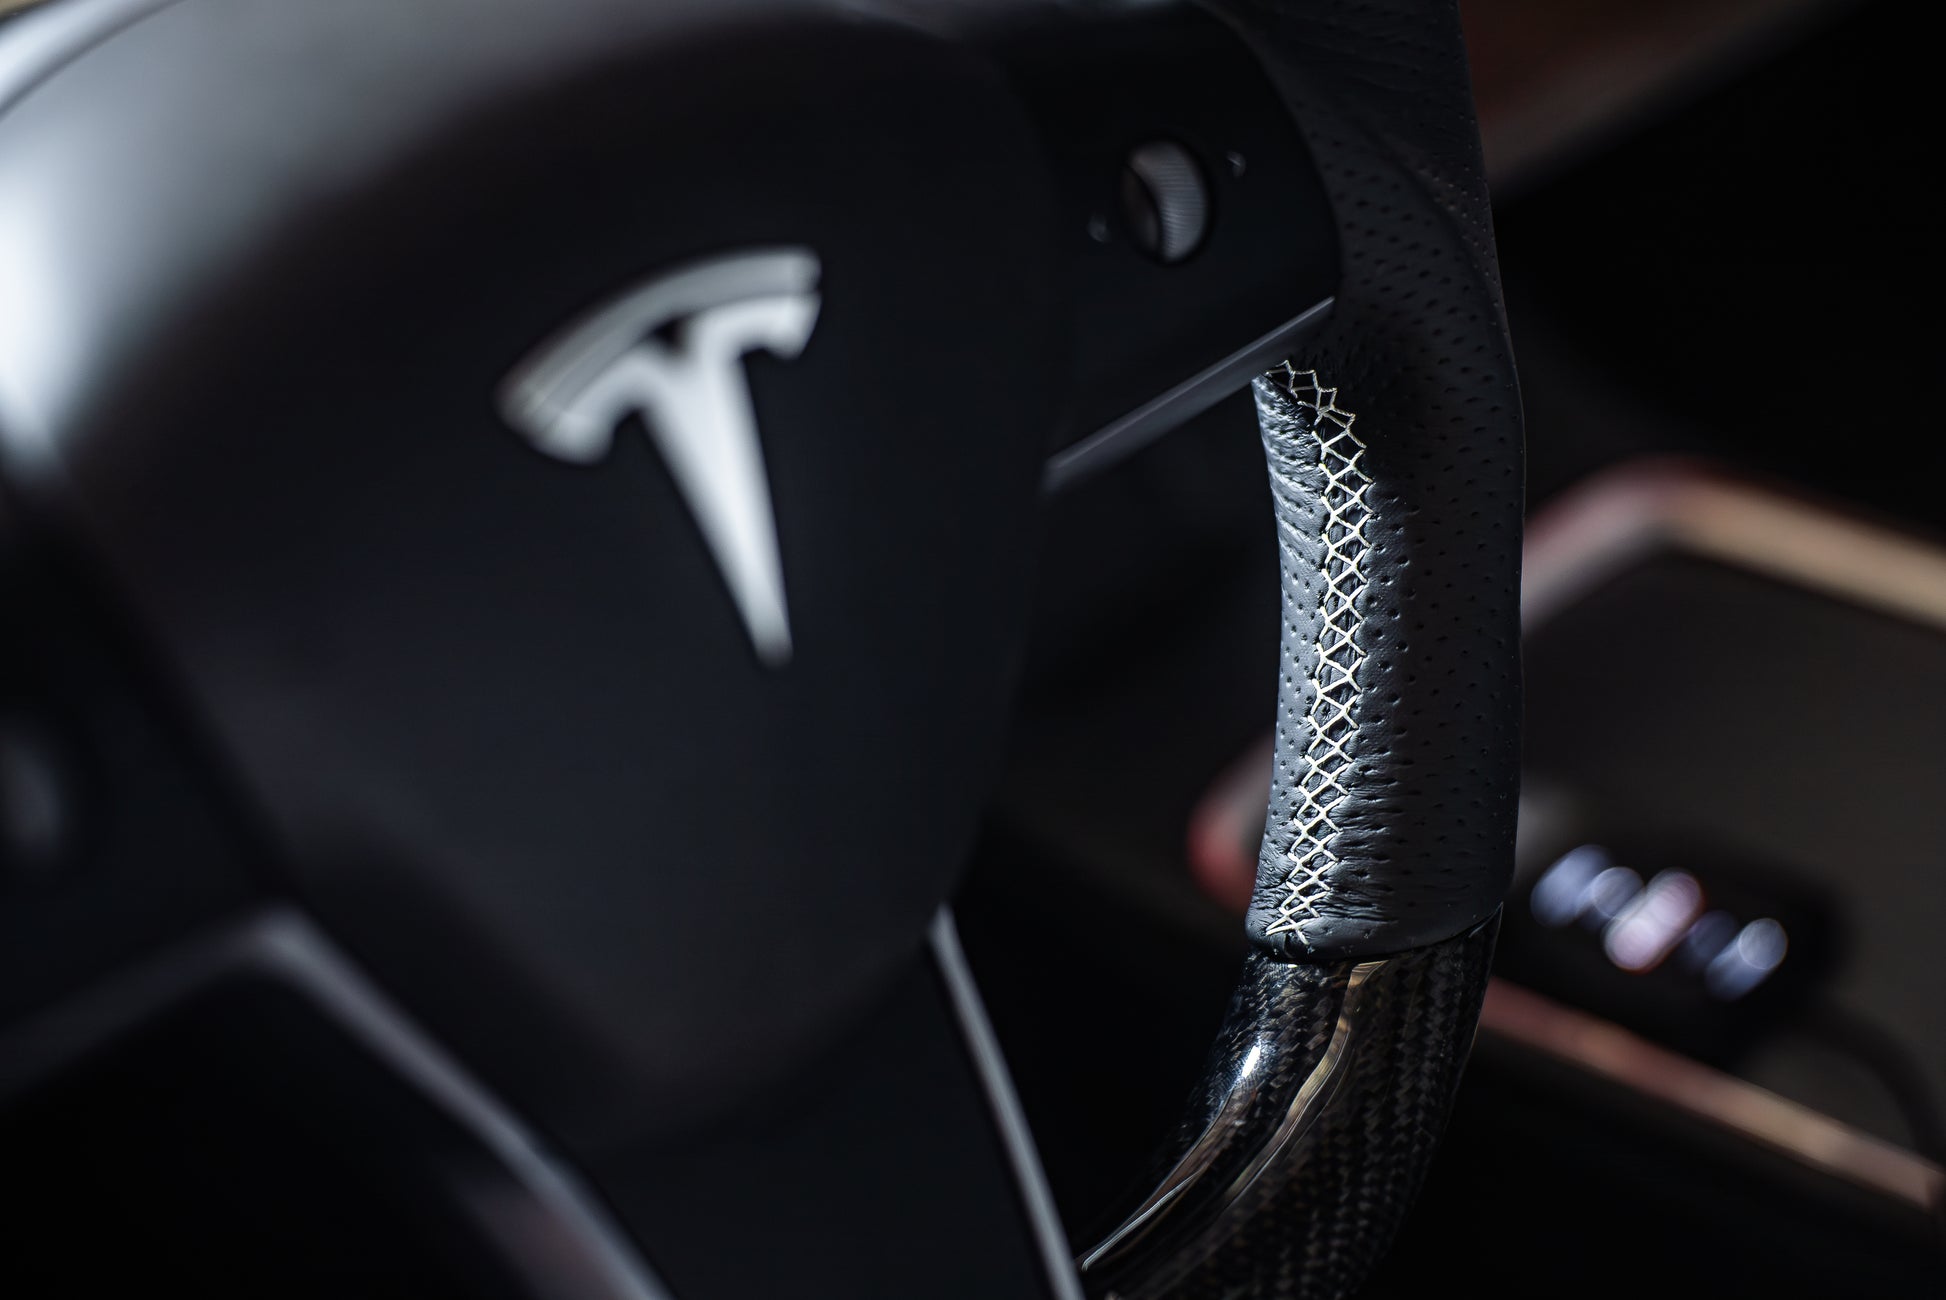 Origin Stryfe | OE Carbon Fiber Steering Wheel - Tesla Model 3 & Model Y